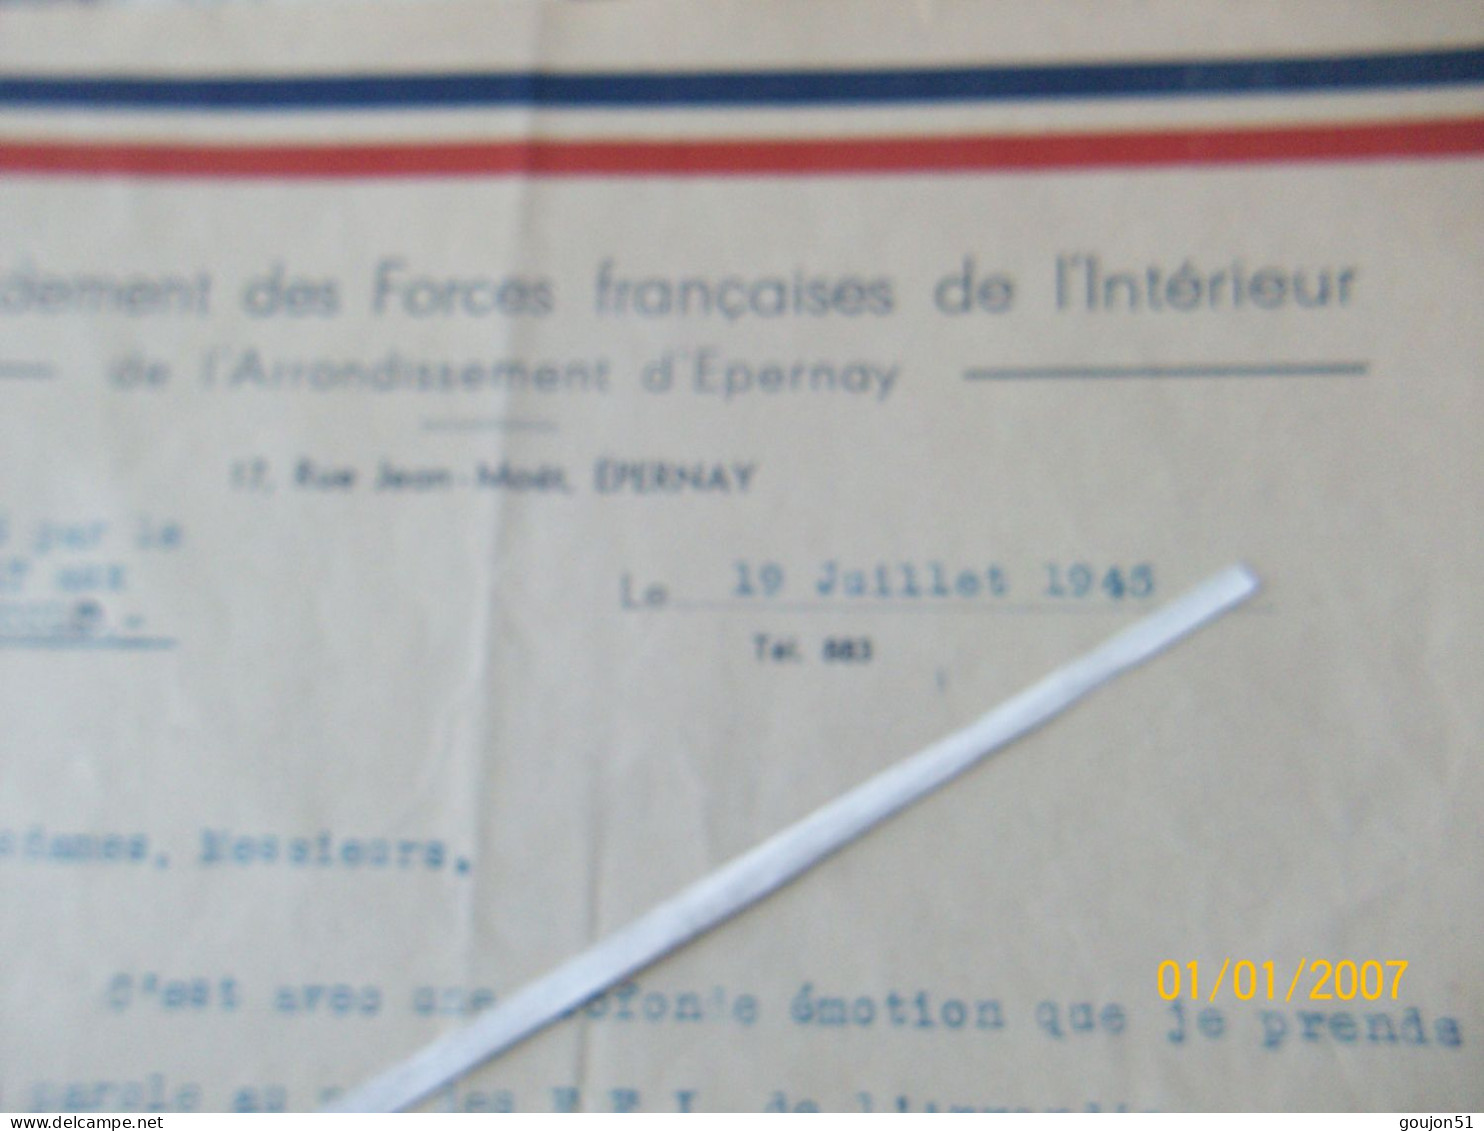 Lettre Commandement Des Forces Française De L' Intérieur De L'Arrondissement D'Epernay Discours Prononcé Par Le Capitain - Documents